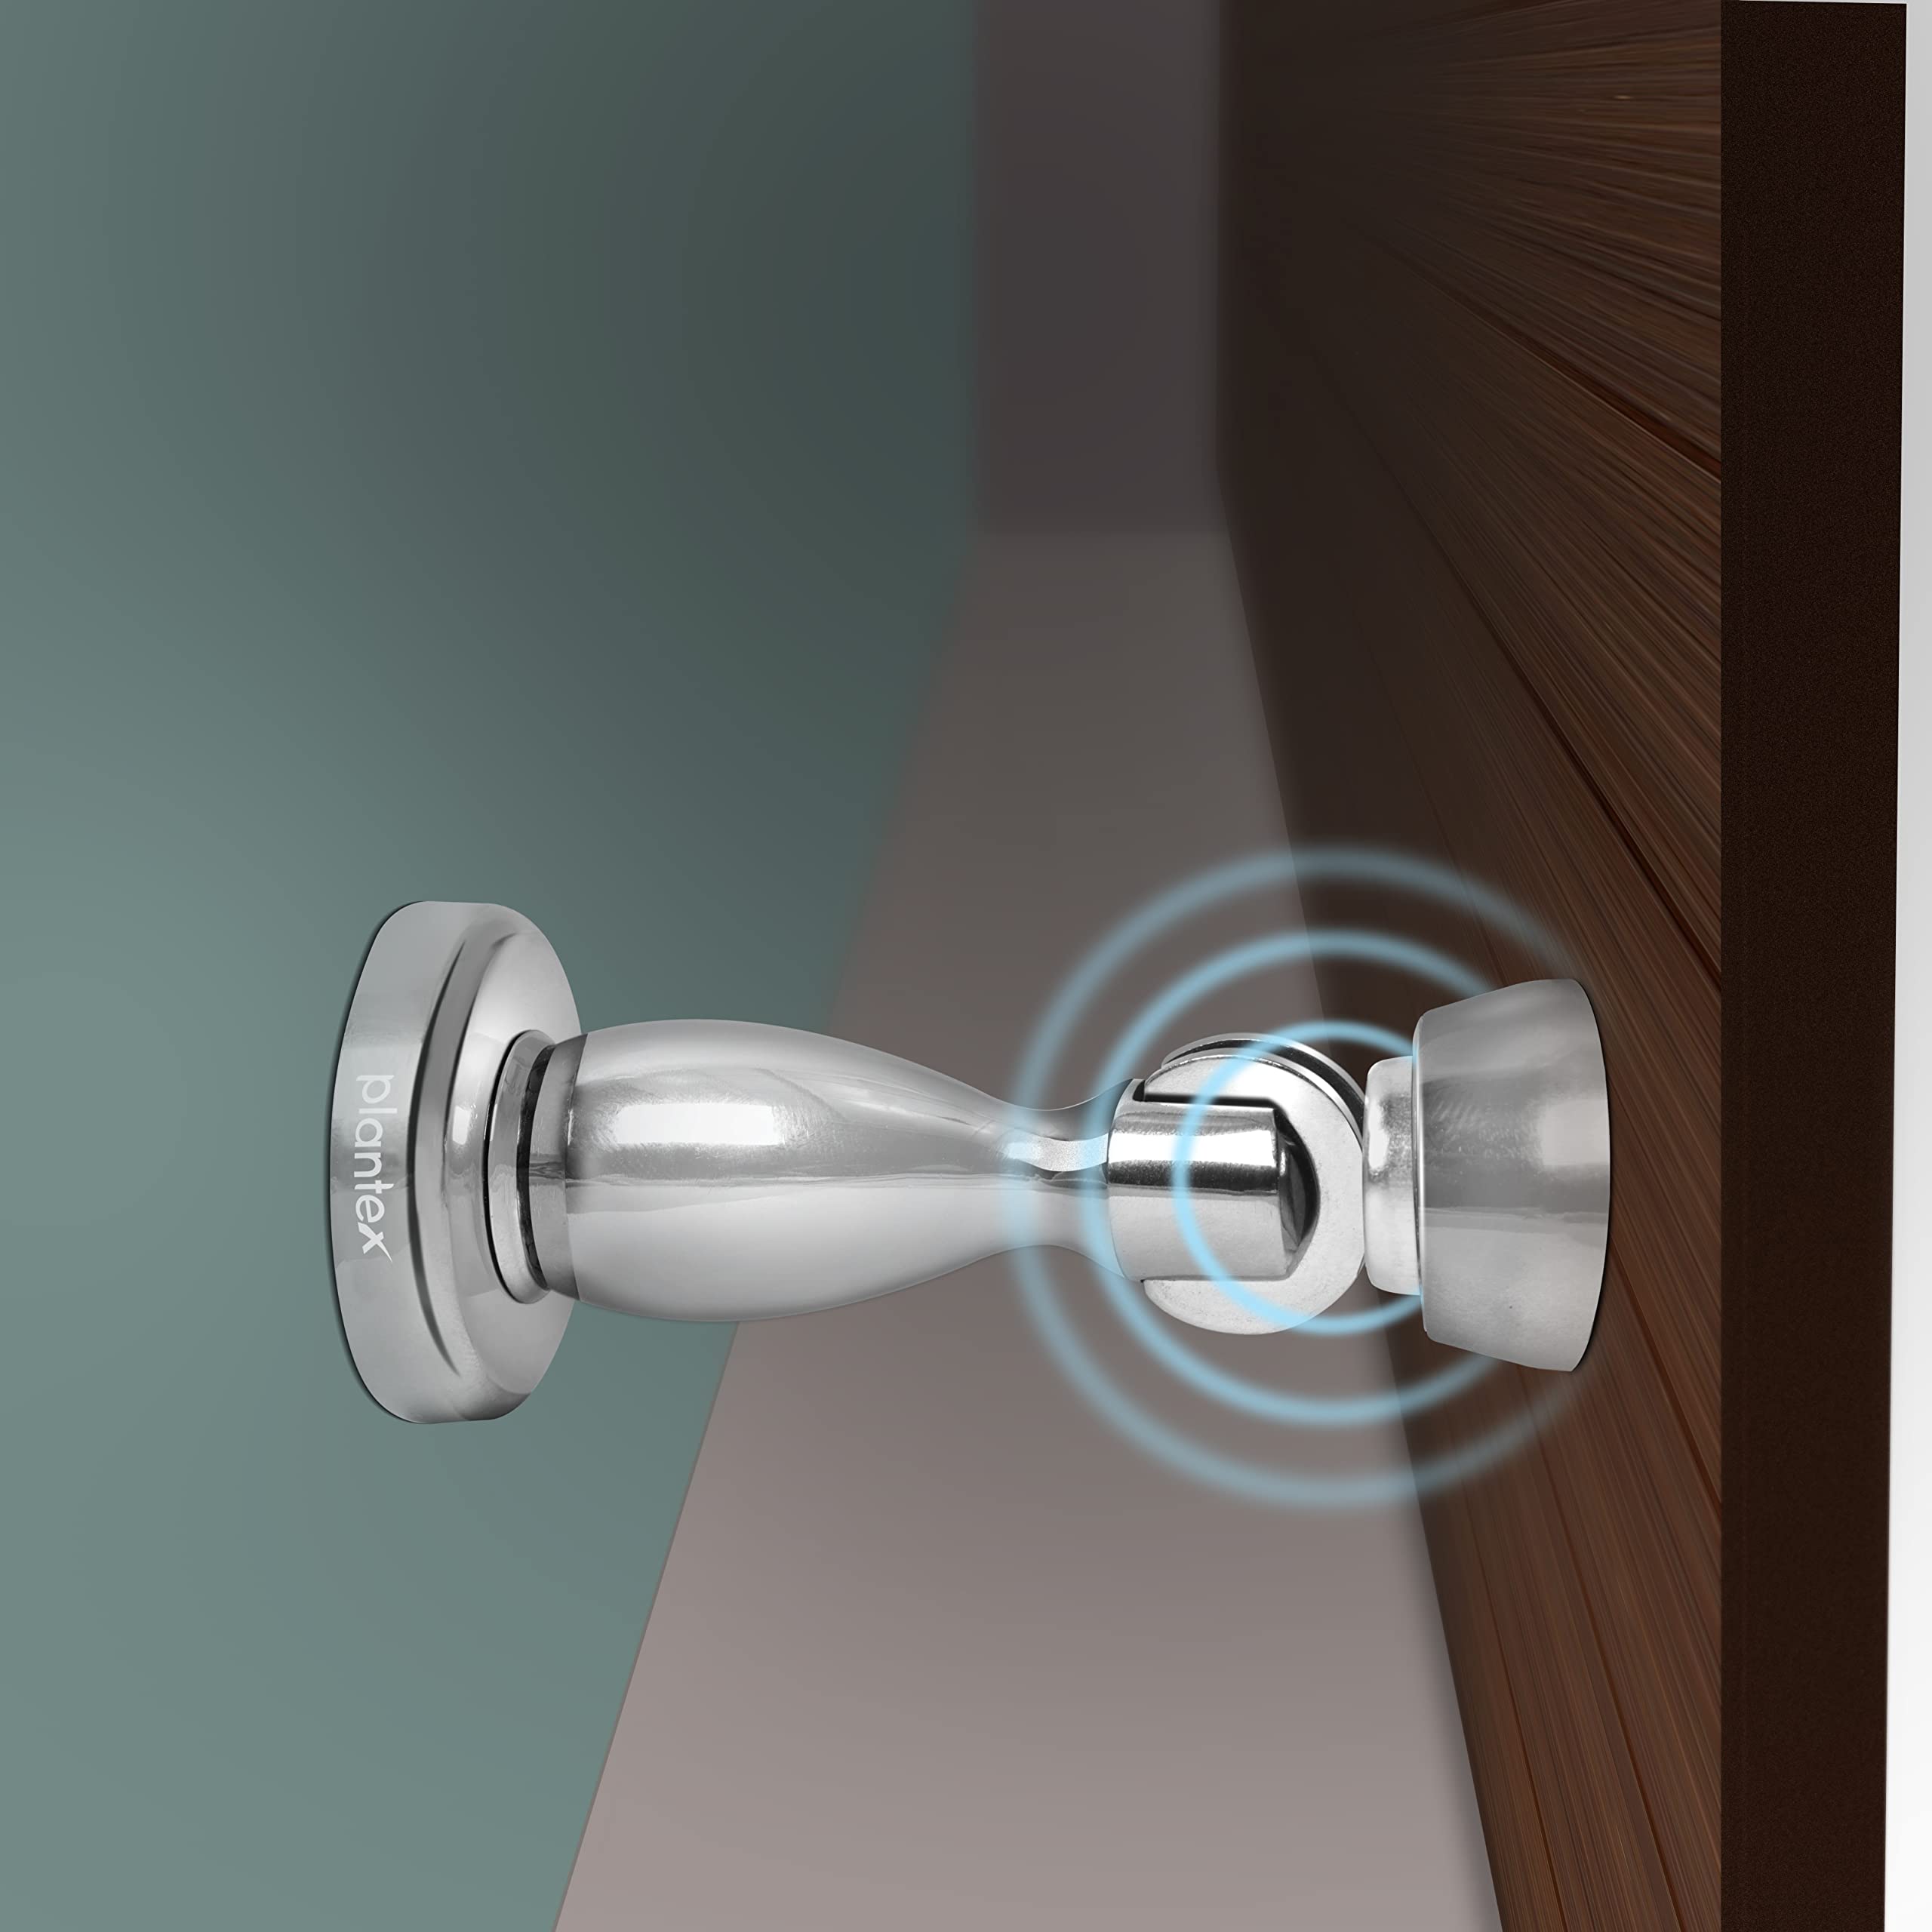 Plantex Magnetic Door Stopper for Home/ 360 Degree Magnet Door Catcher/Door Holder for Main Door/Bedroom/Office and Hotel Door - Pack of 2 (4 inch, Chrome)